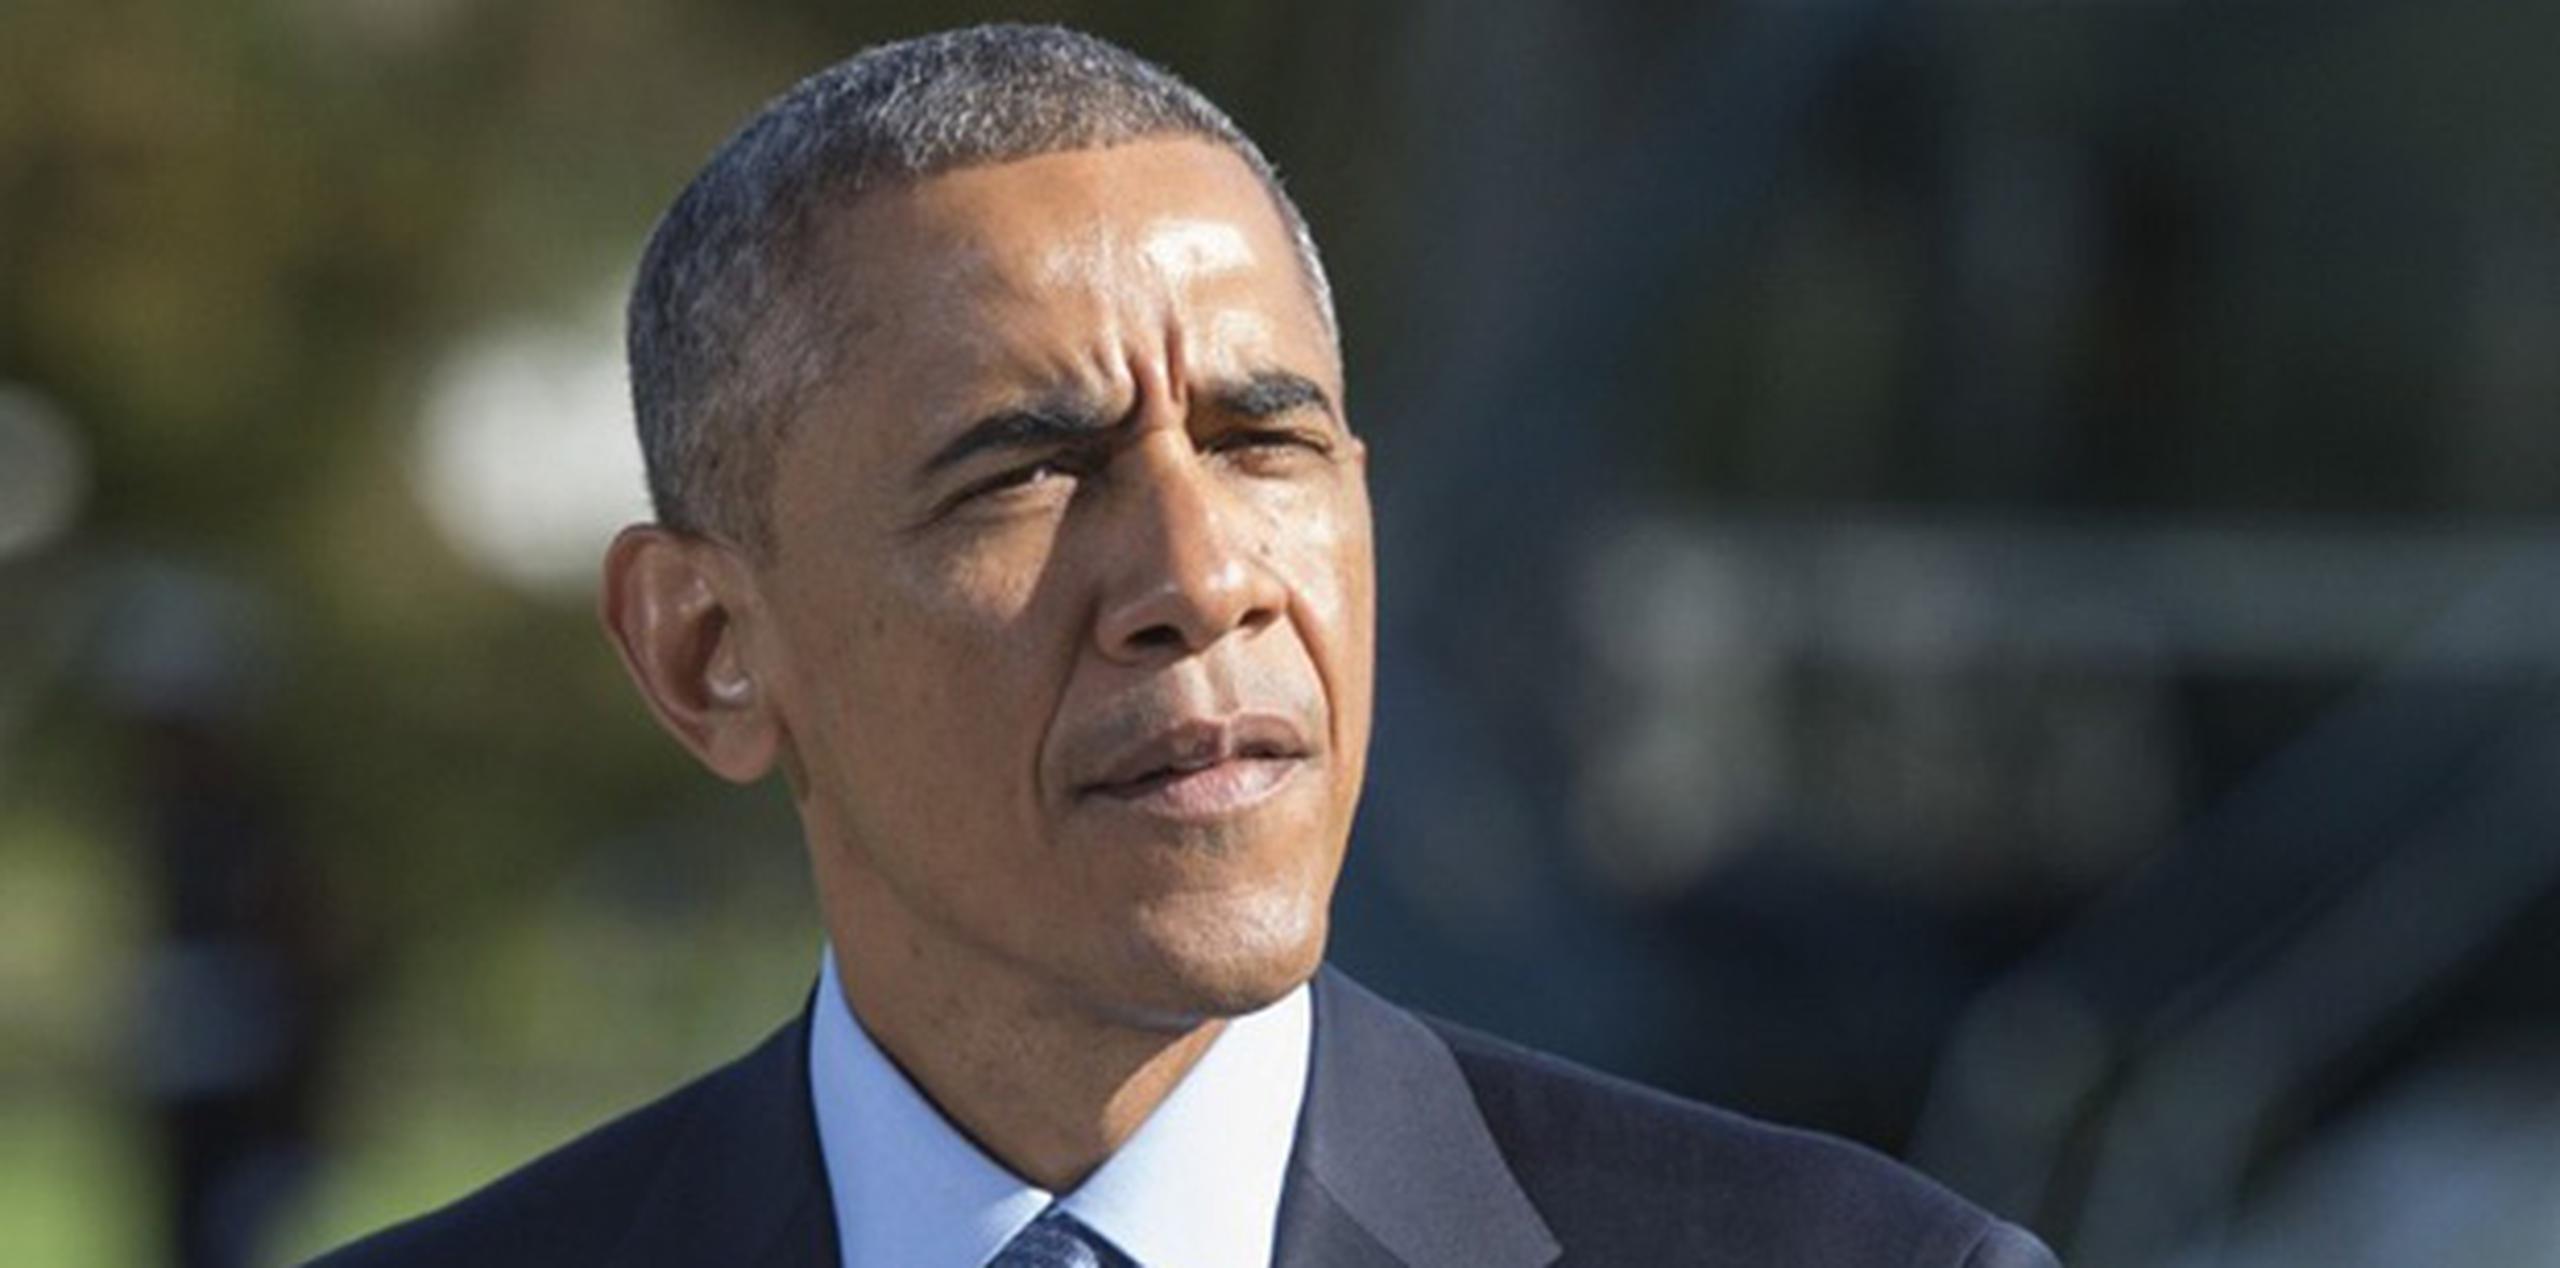 El presidente Barack Obama dijo que la respuesta al ébola debe "basarse en directrices científicas". (AFP)